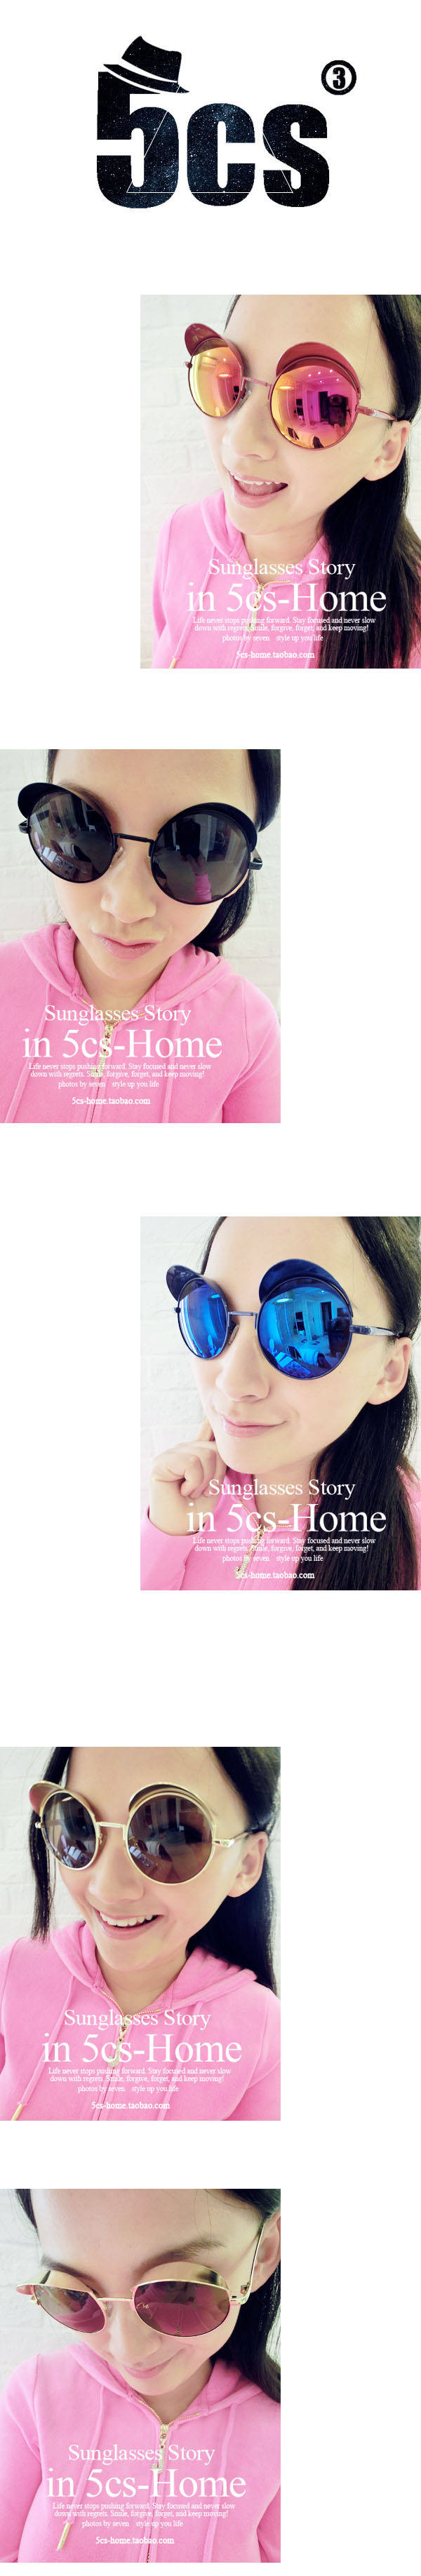 太阳镜 女 2015新款超酷超炫超强金属质感潮流太阳眼镜 墨镜 5319示例图5